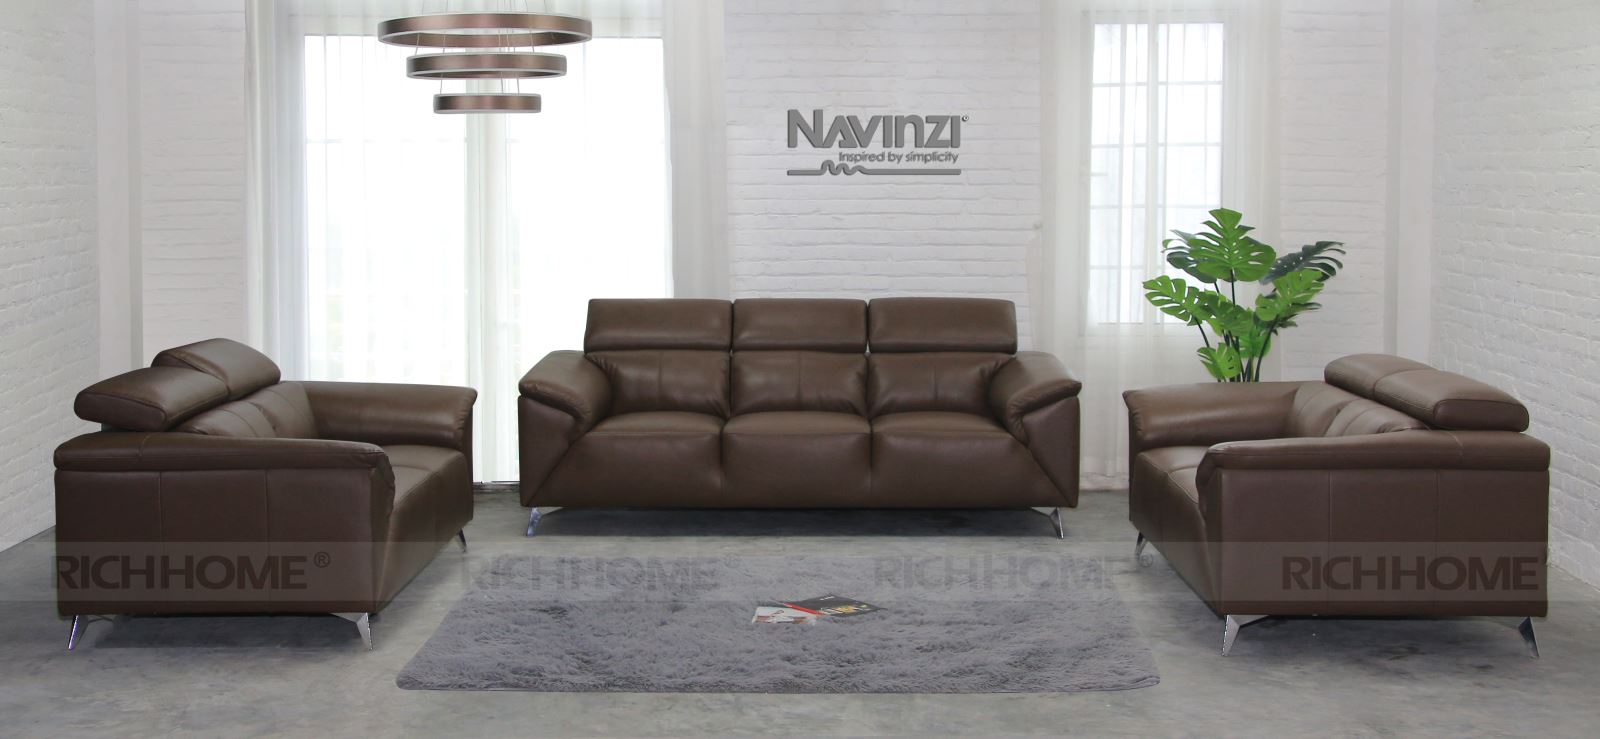 Tổng hợp các mẫu sofa nhập khẩu với nhiều kiểu dáng khác nhau - Ảnh 2